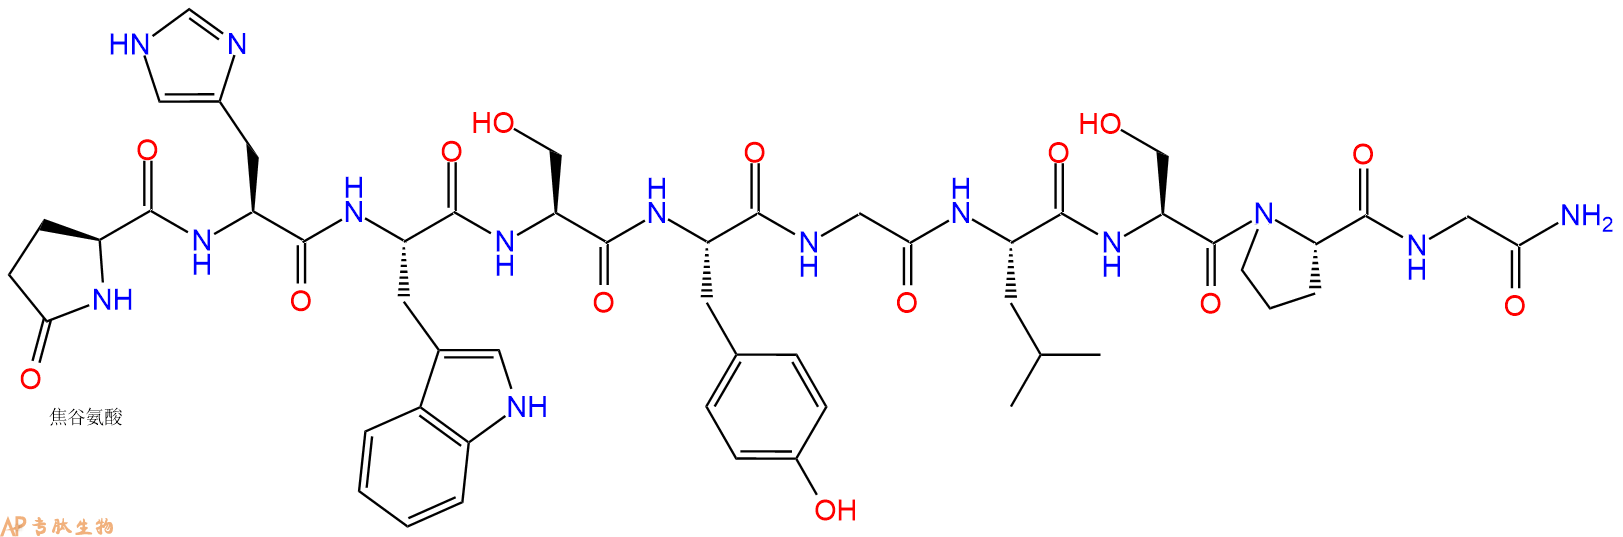 专肽生物产品黄体生成素释放激素LHRH (sea bream)107569-48-2